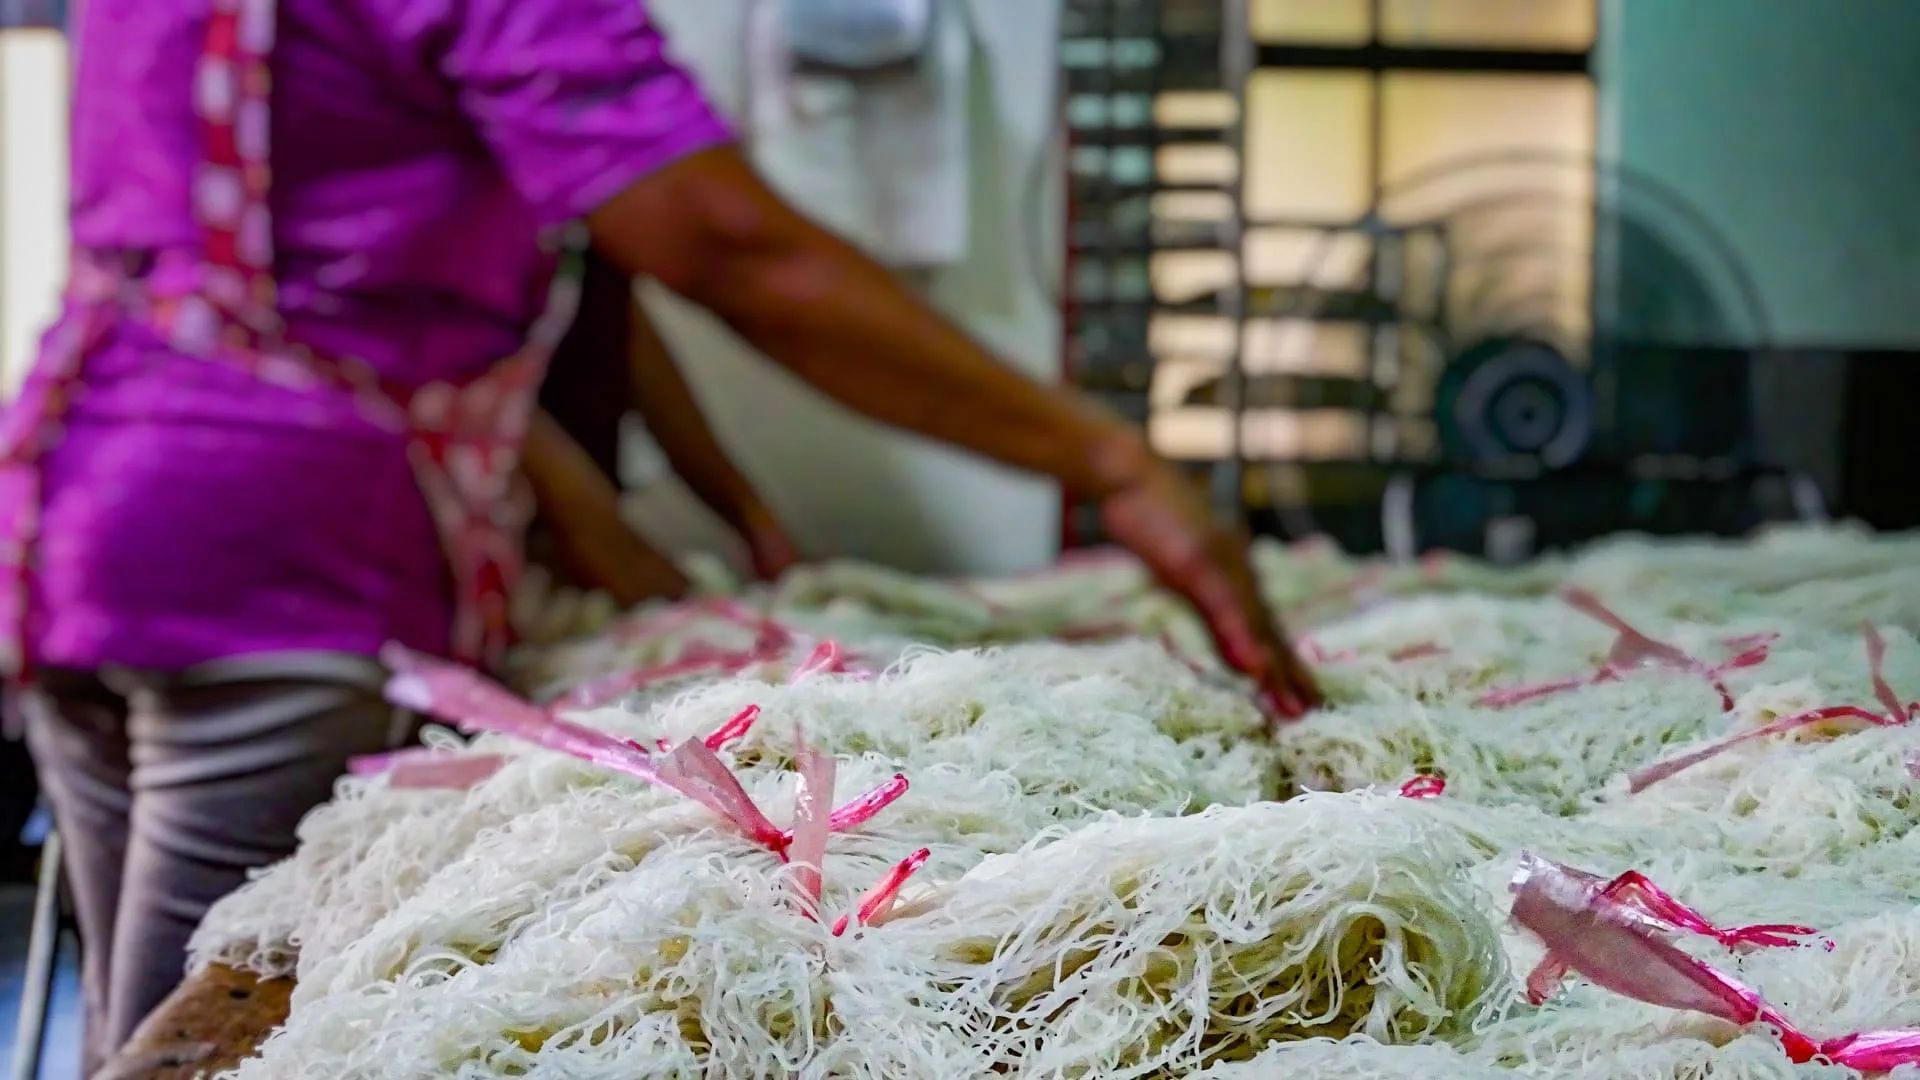 【攝影報導】百年的良心堅持 新竹東德成米粉